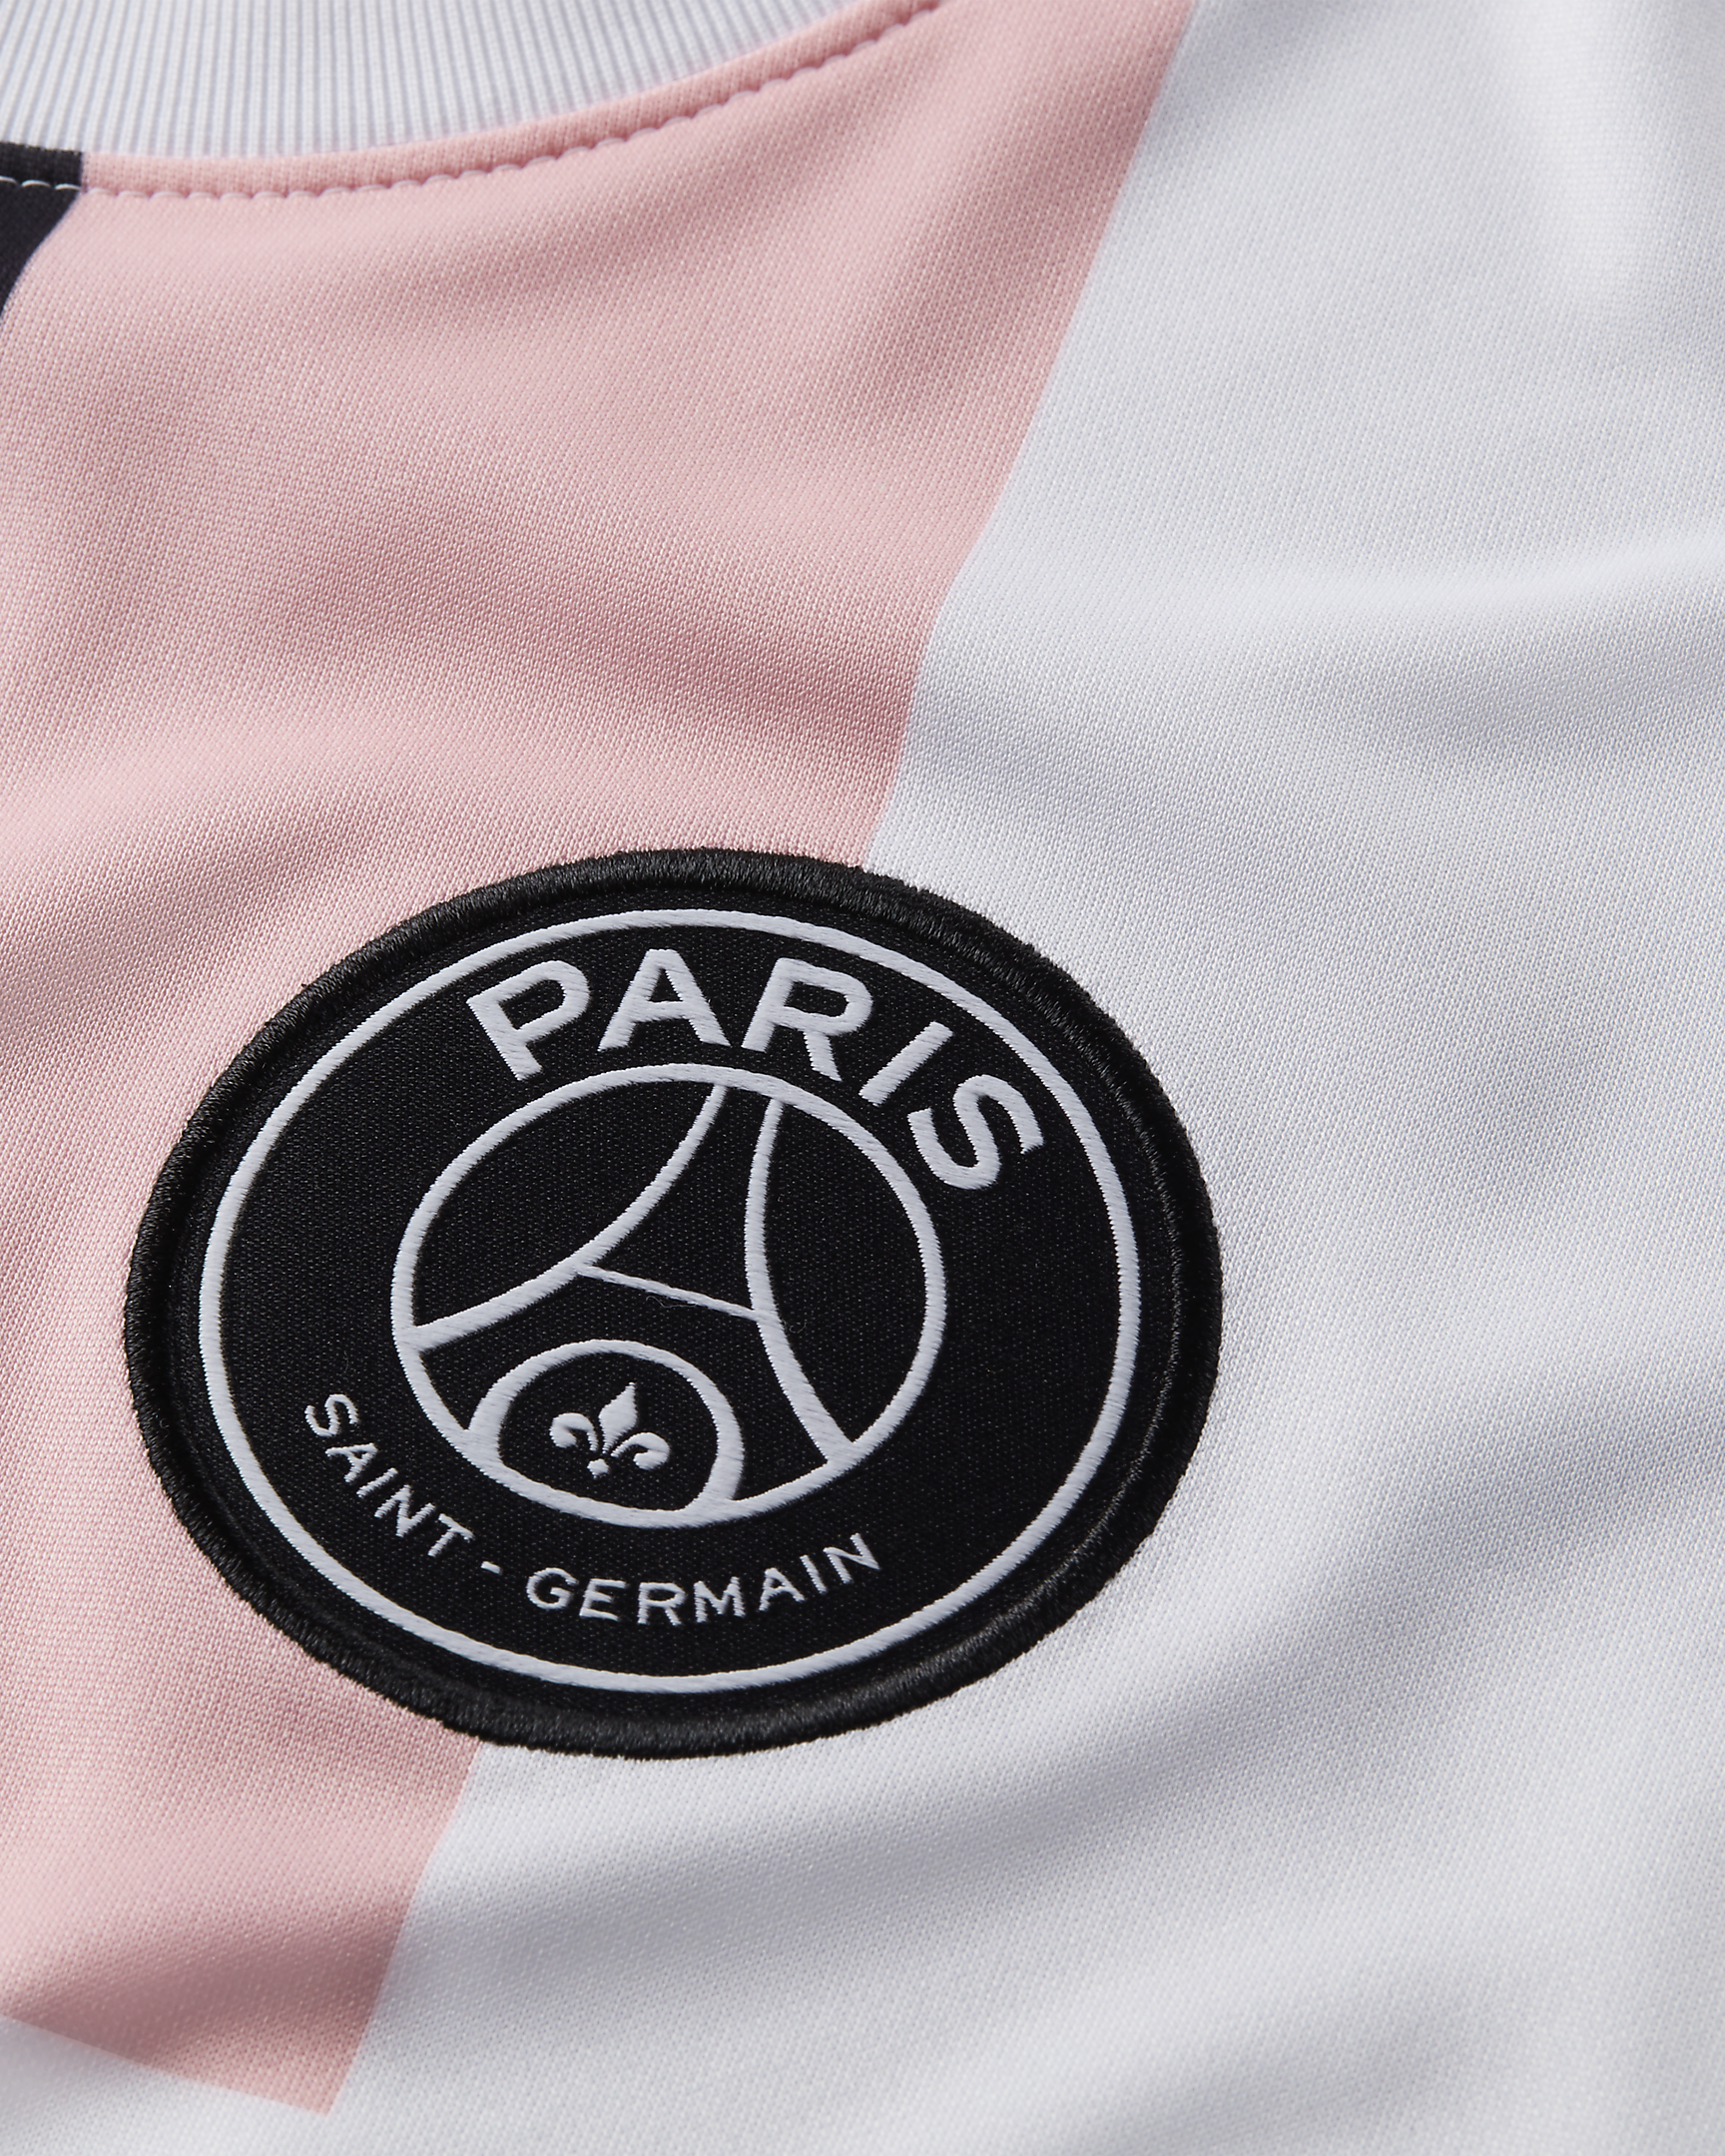 Le Paris Saint-Germain et Jordan Brand lancent une collection